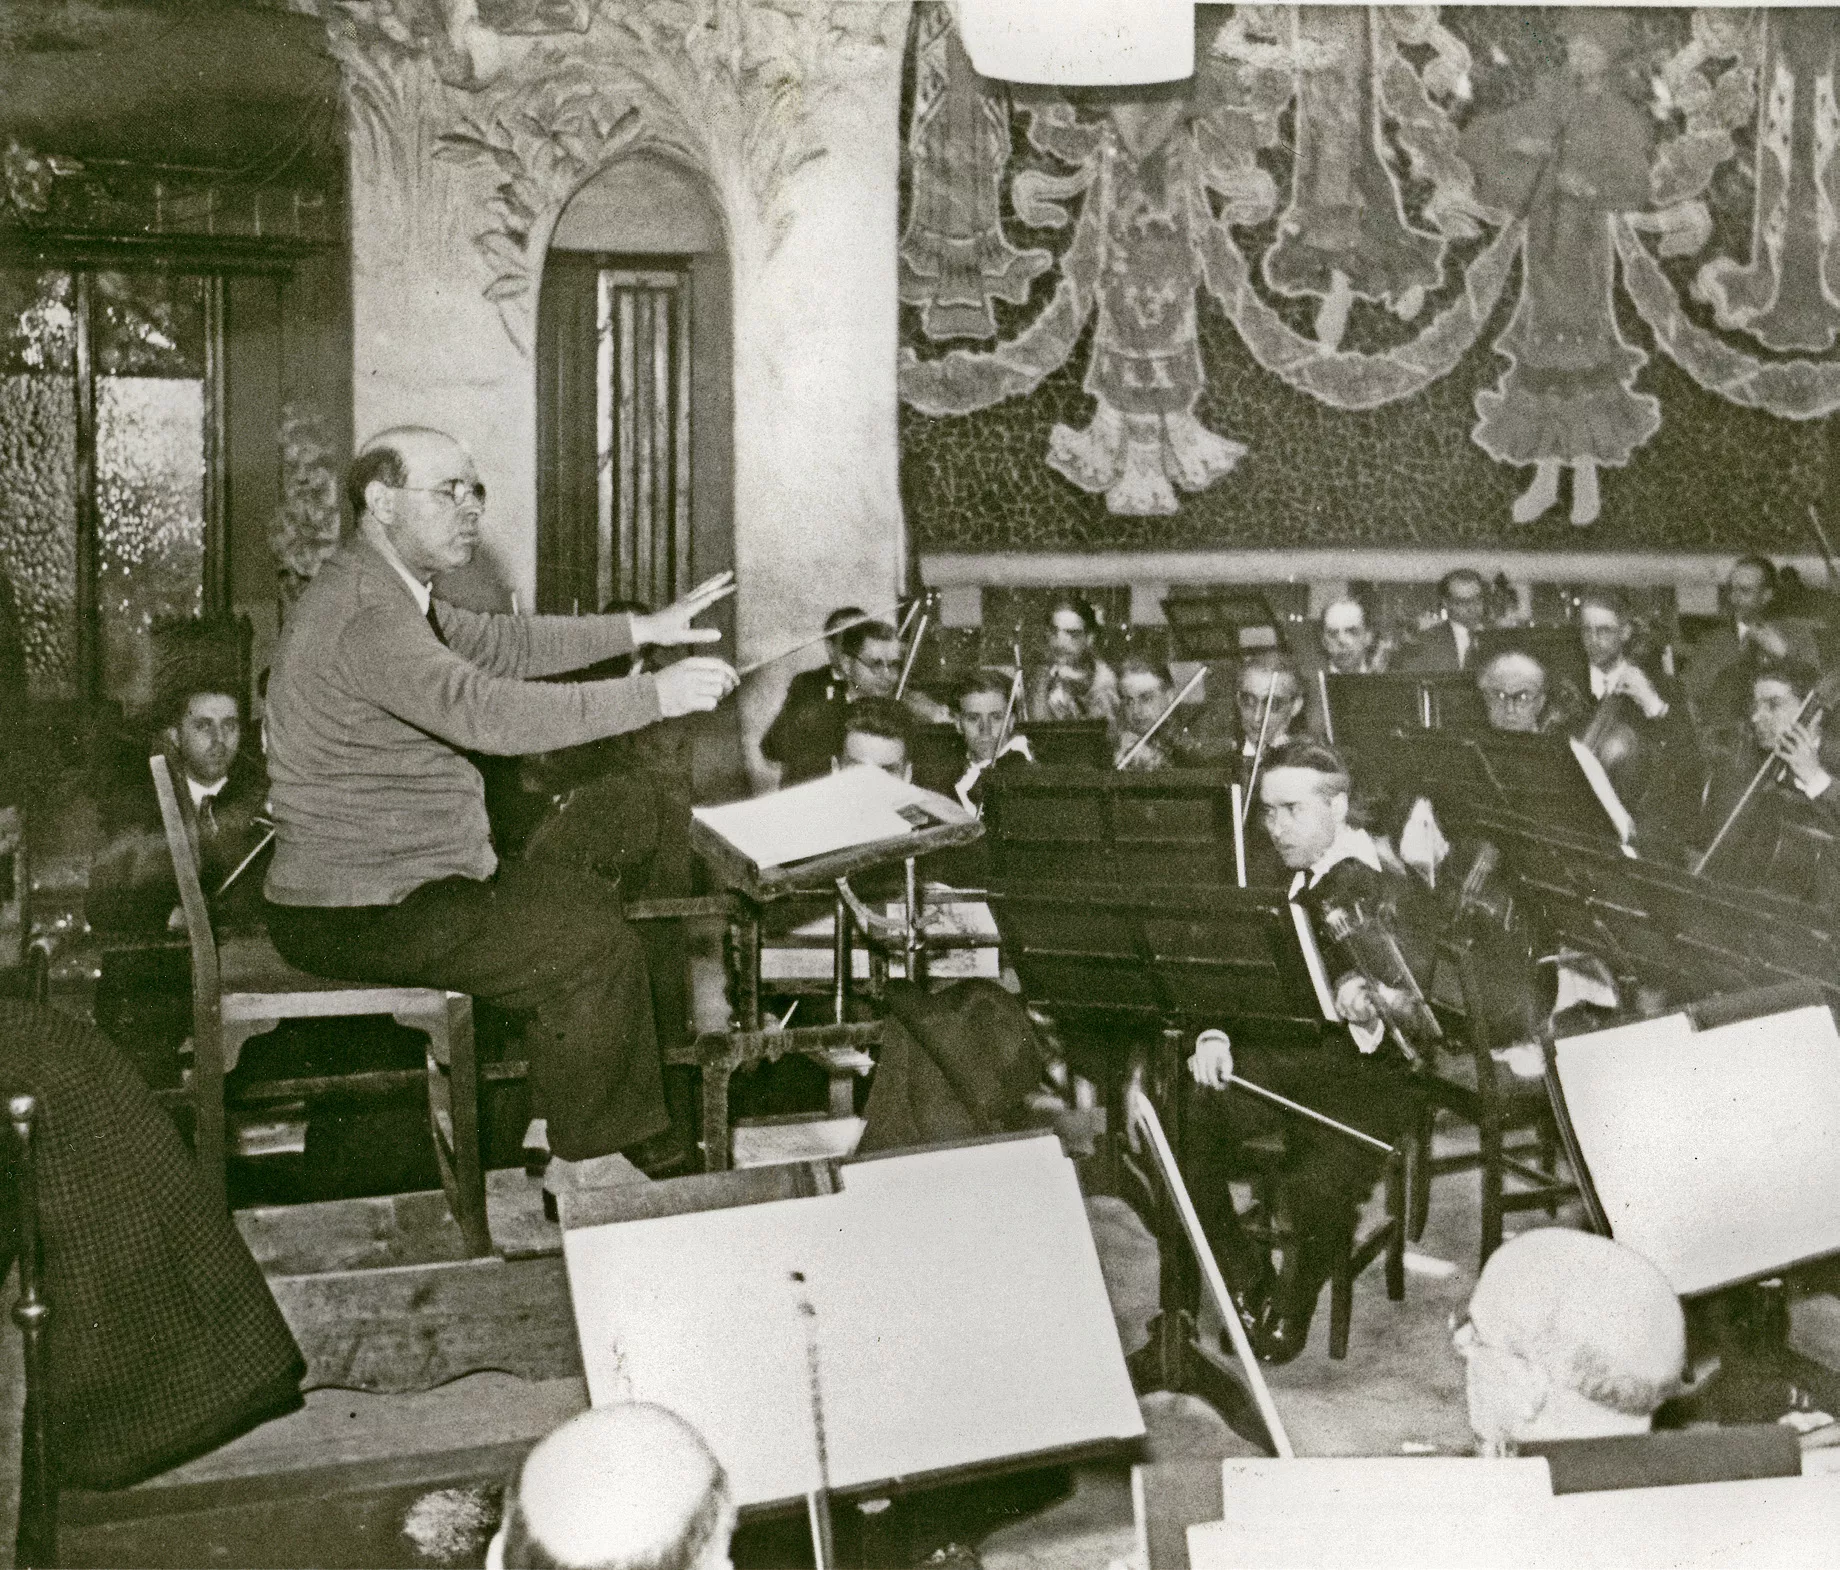 El dia 18 de juliol del 1936, l’Orquestra Pau Casals practicava al Palau de la Música Catalana quan es va produir l’alçament militar